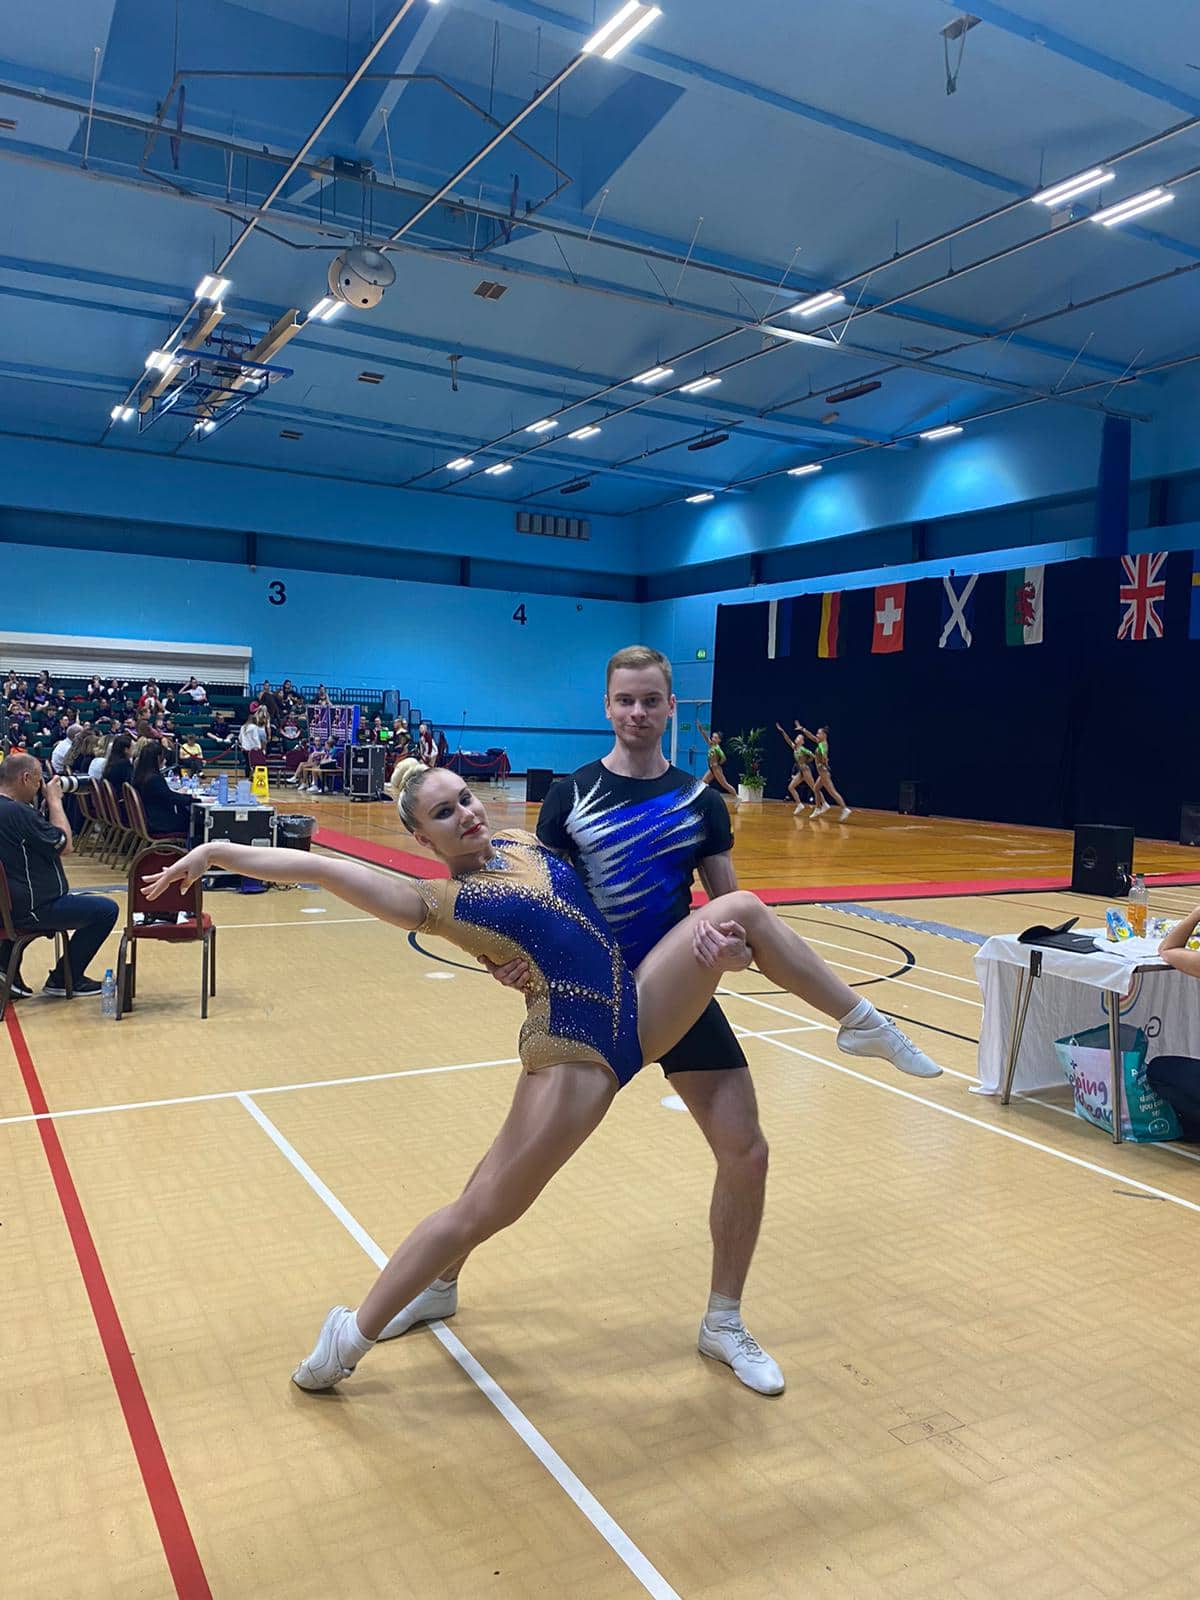 Gimnastė ir gimnastas, dėvintys mėlynos spalvos triko atlieka šokių judesį sporto salėje